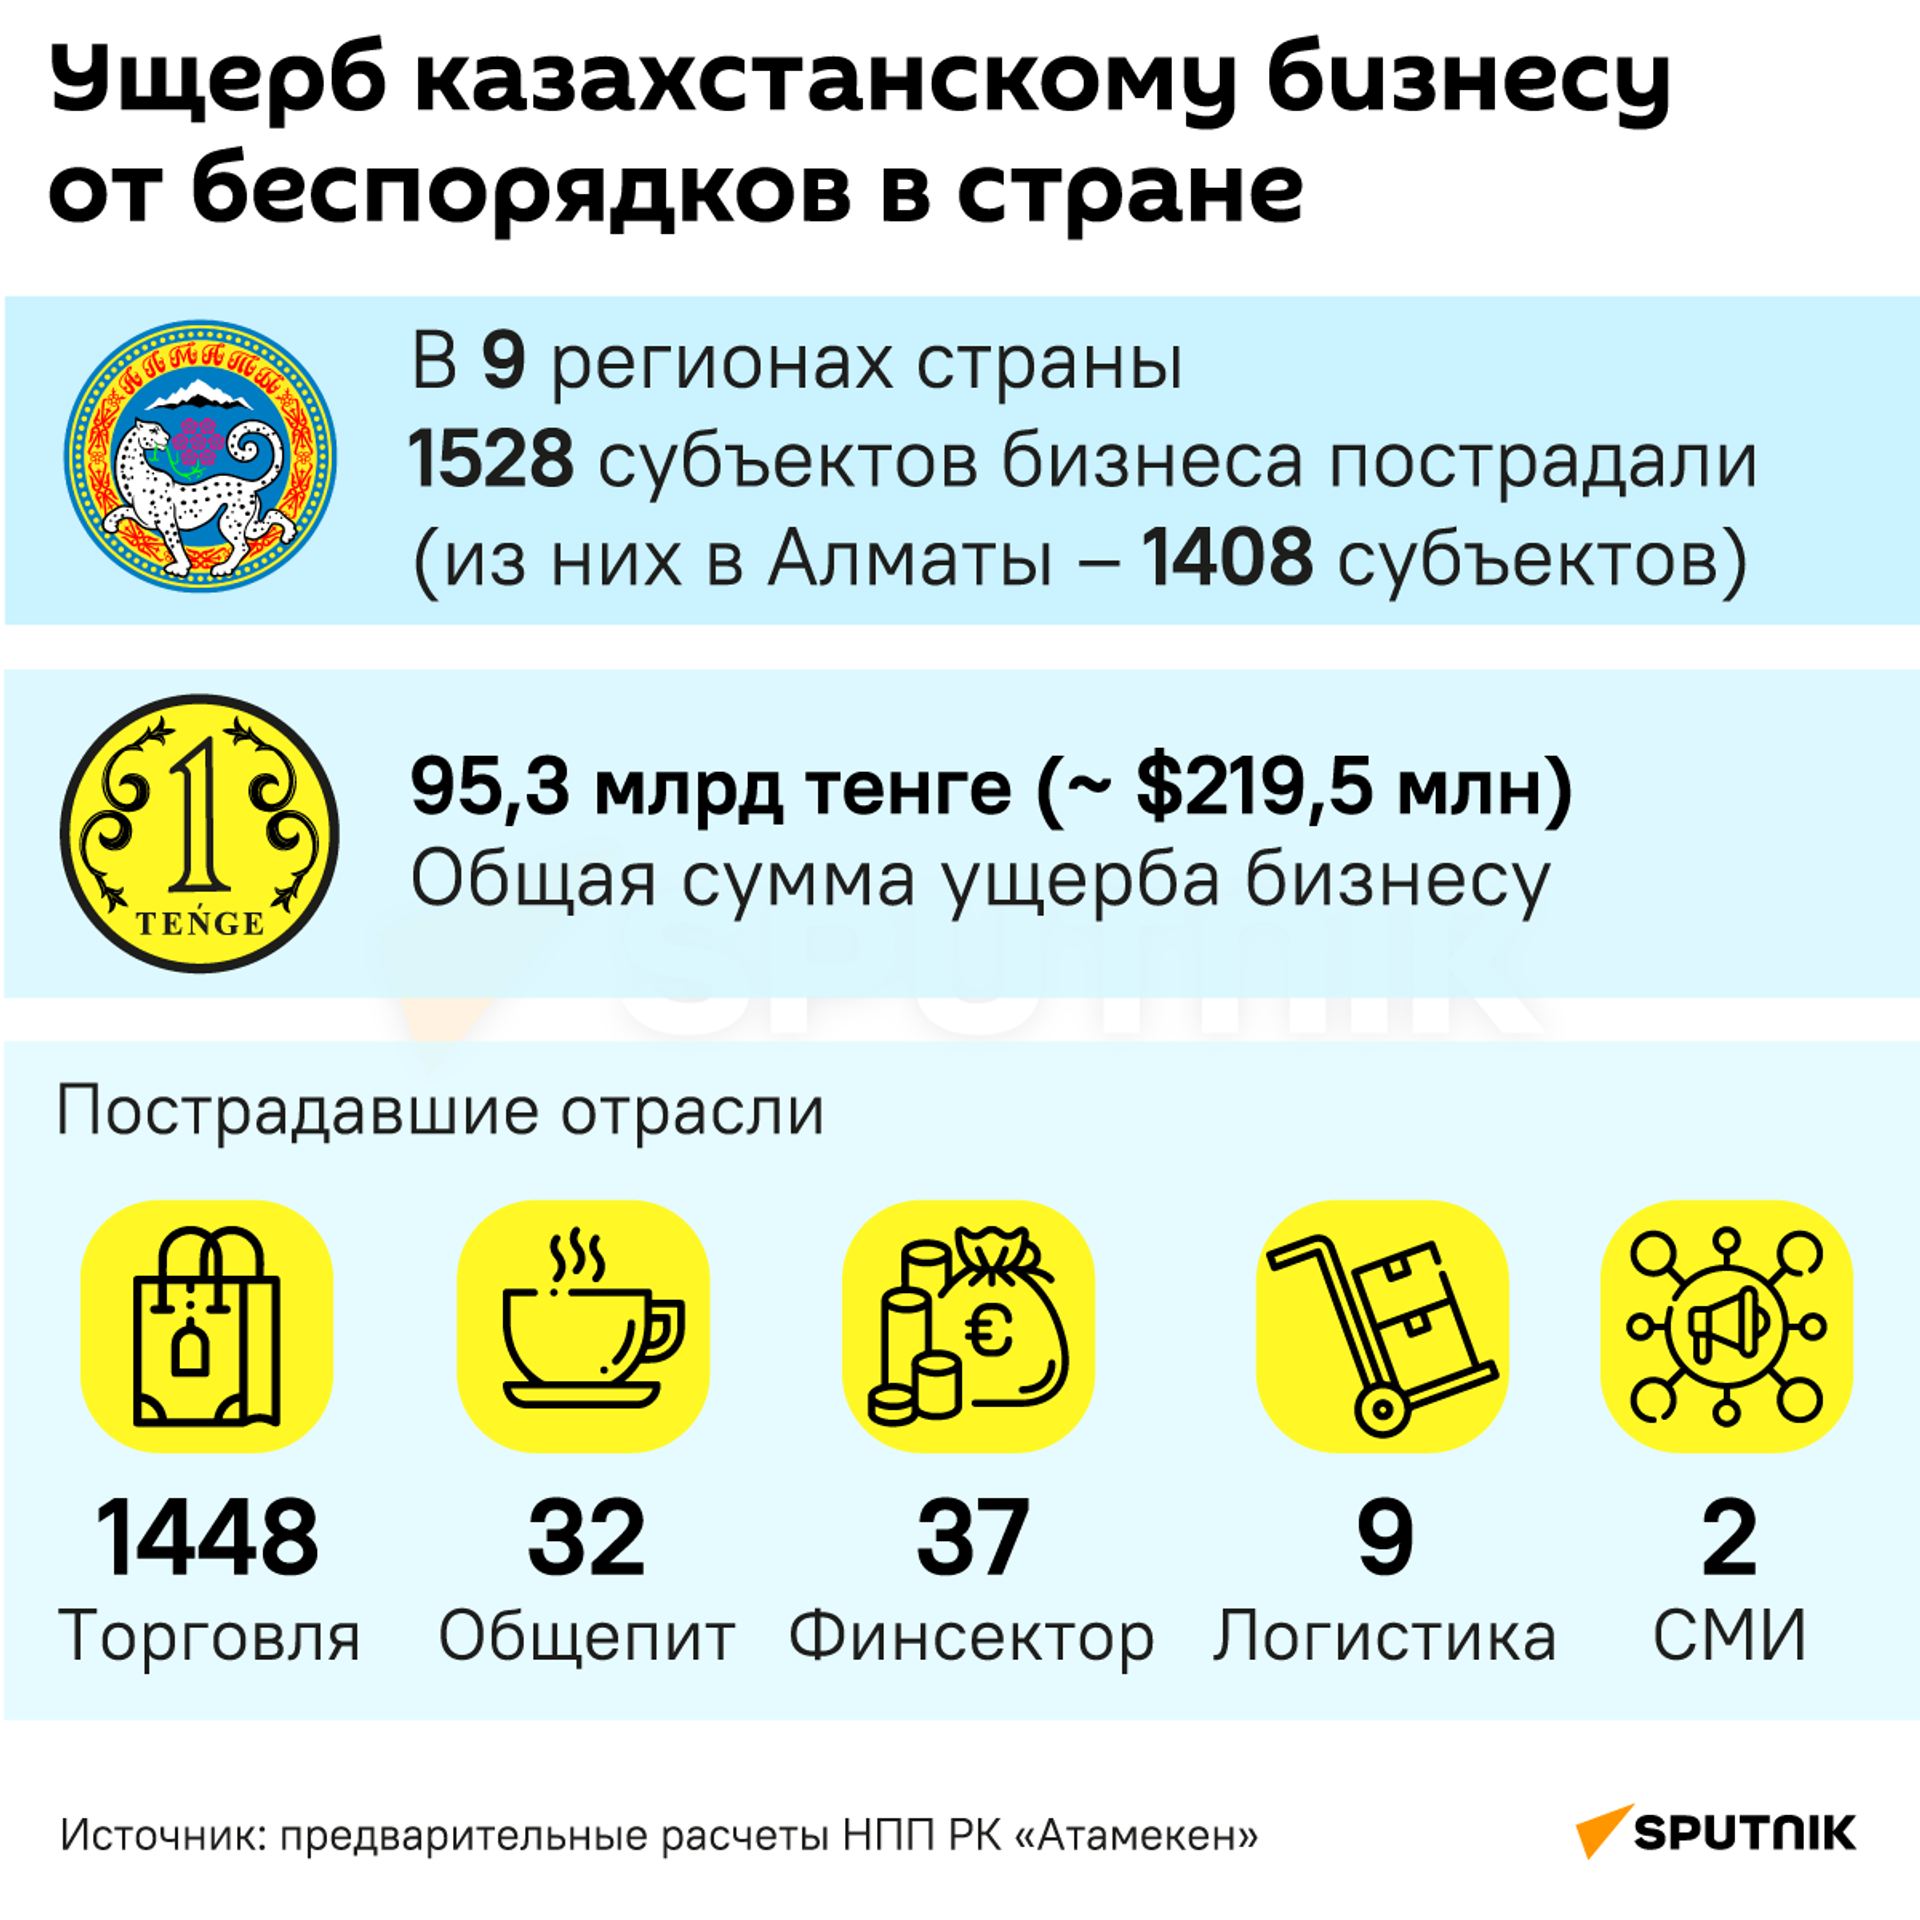 Ущерб казахстанскому бизнесу от беспорядков в январе 2022 года - Sputnik Казахстан, 1920, 01.02.2022